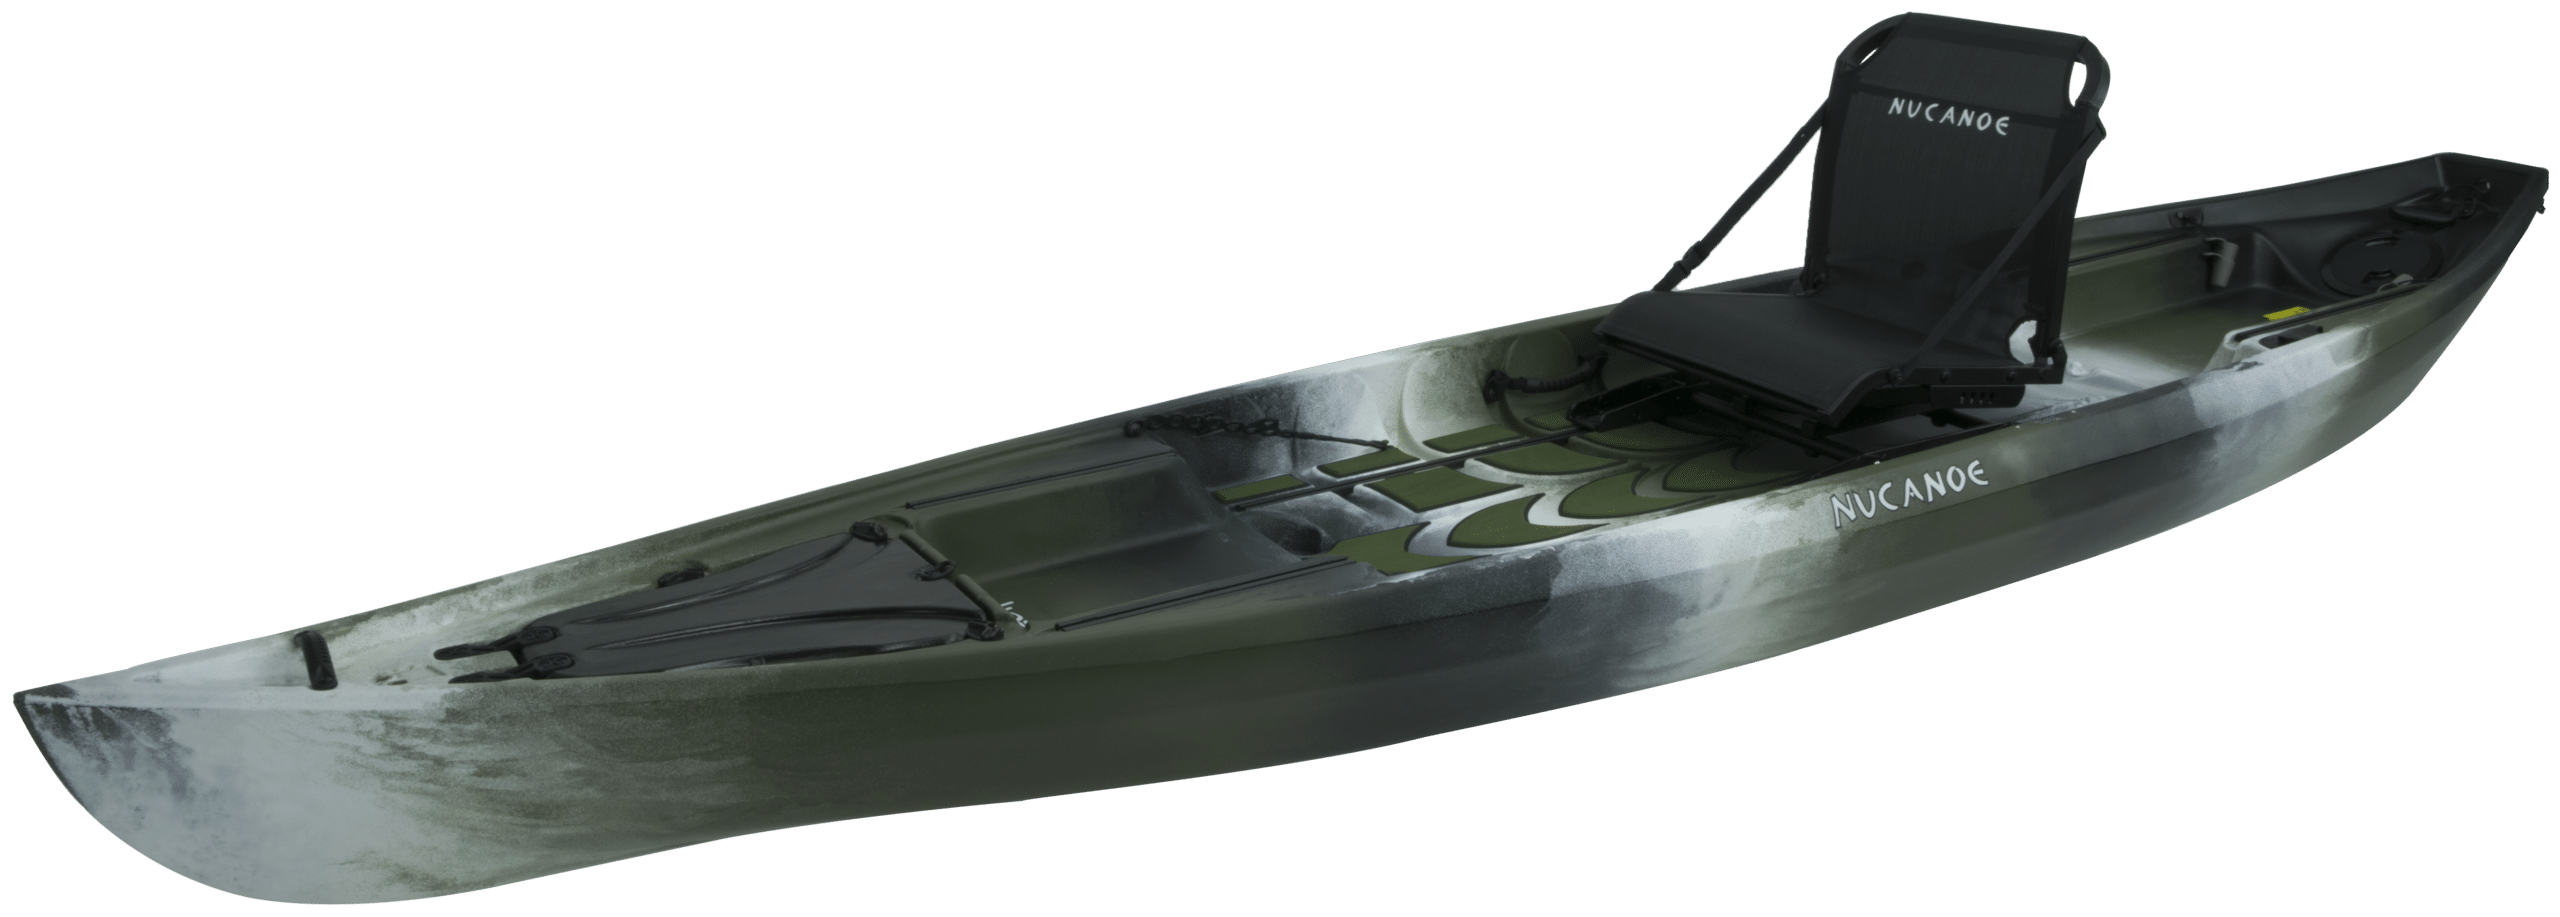 Tn Pursuit Tundra Scaled | Fishing Kayaks | Canoe Fishing | Nucanoe